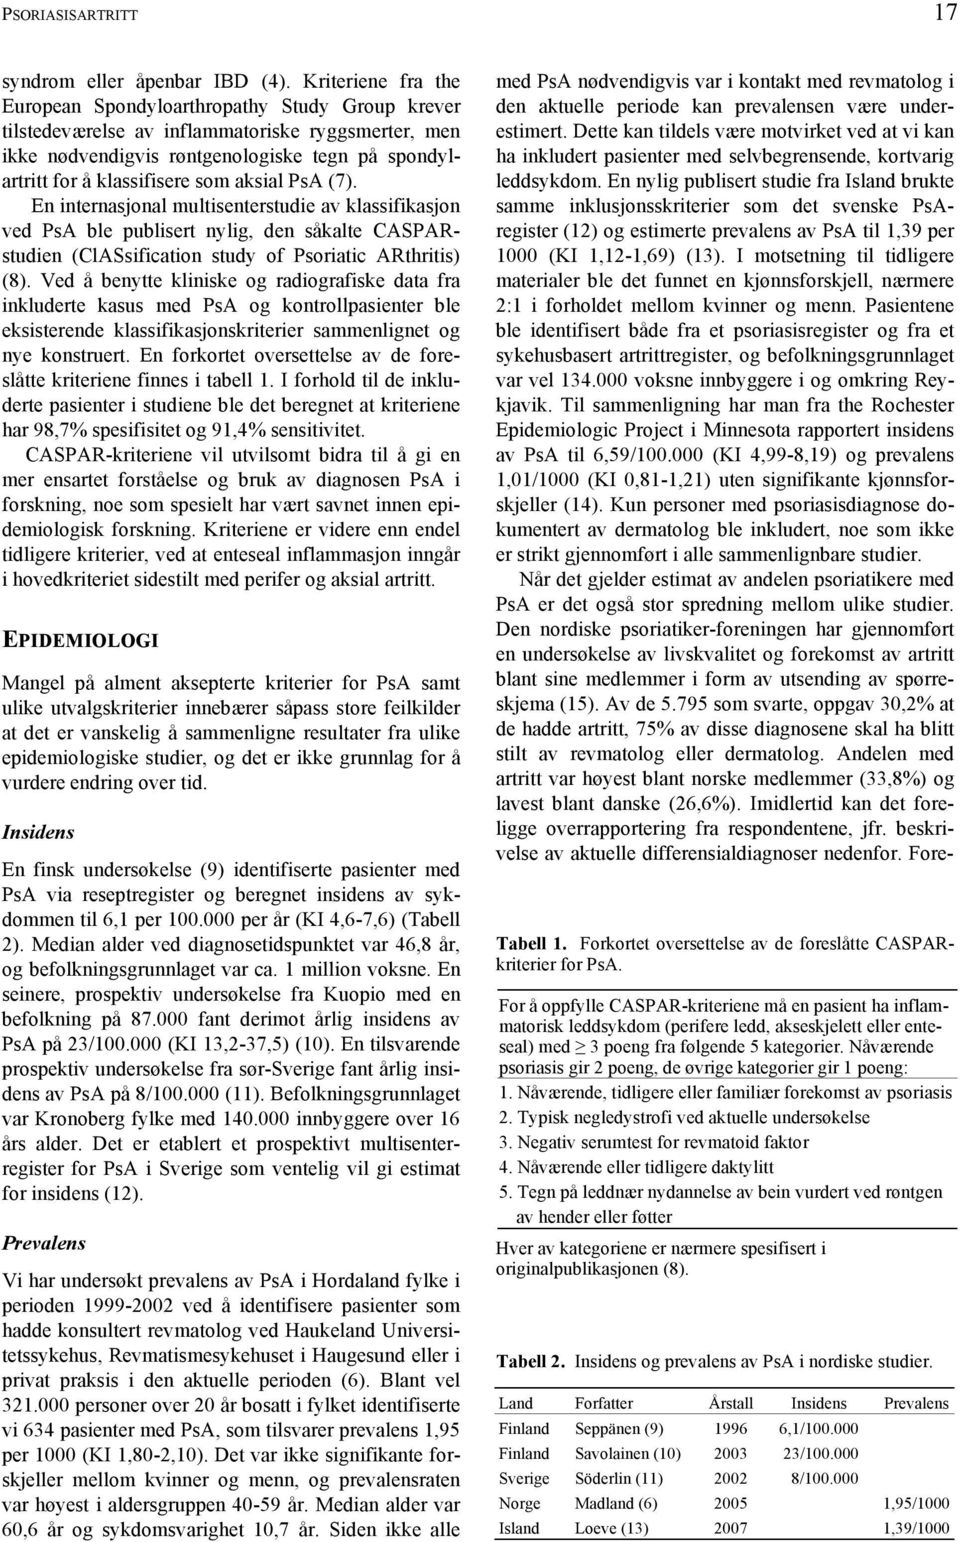 aksial PsA (7). En internasjonal multisenterstudie av klassifikasjon ved PsA ble publisert nylig, den såkalte CASPARstudien (ClASsification study of Psoriatic ARthritis) (8).